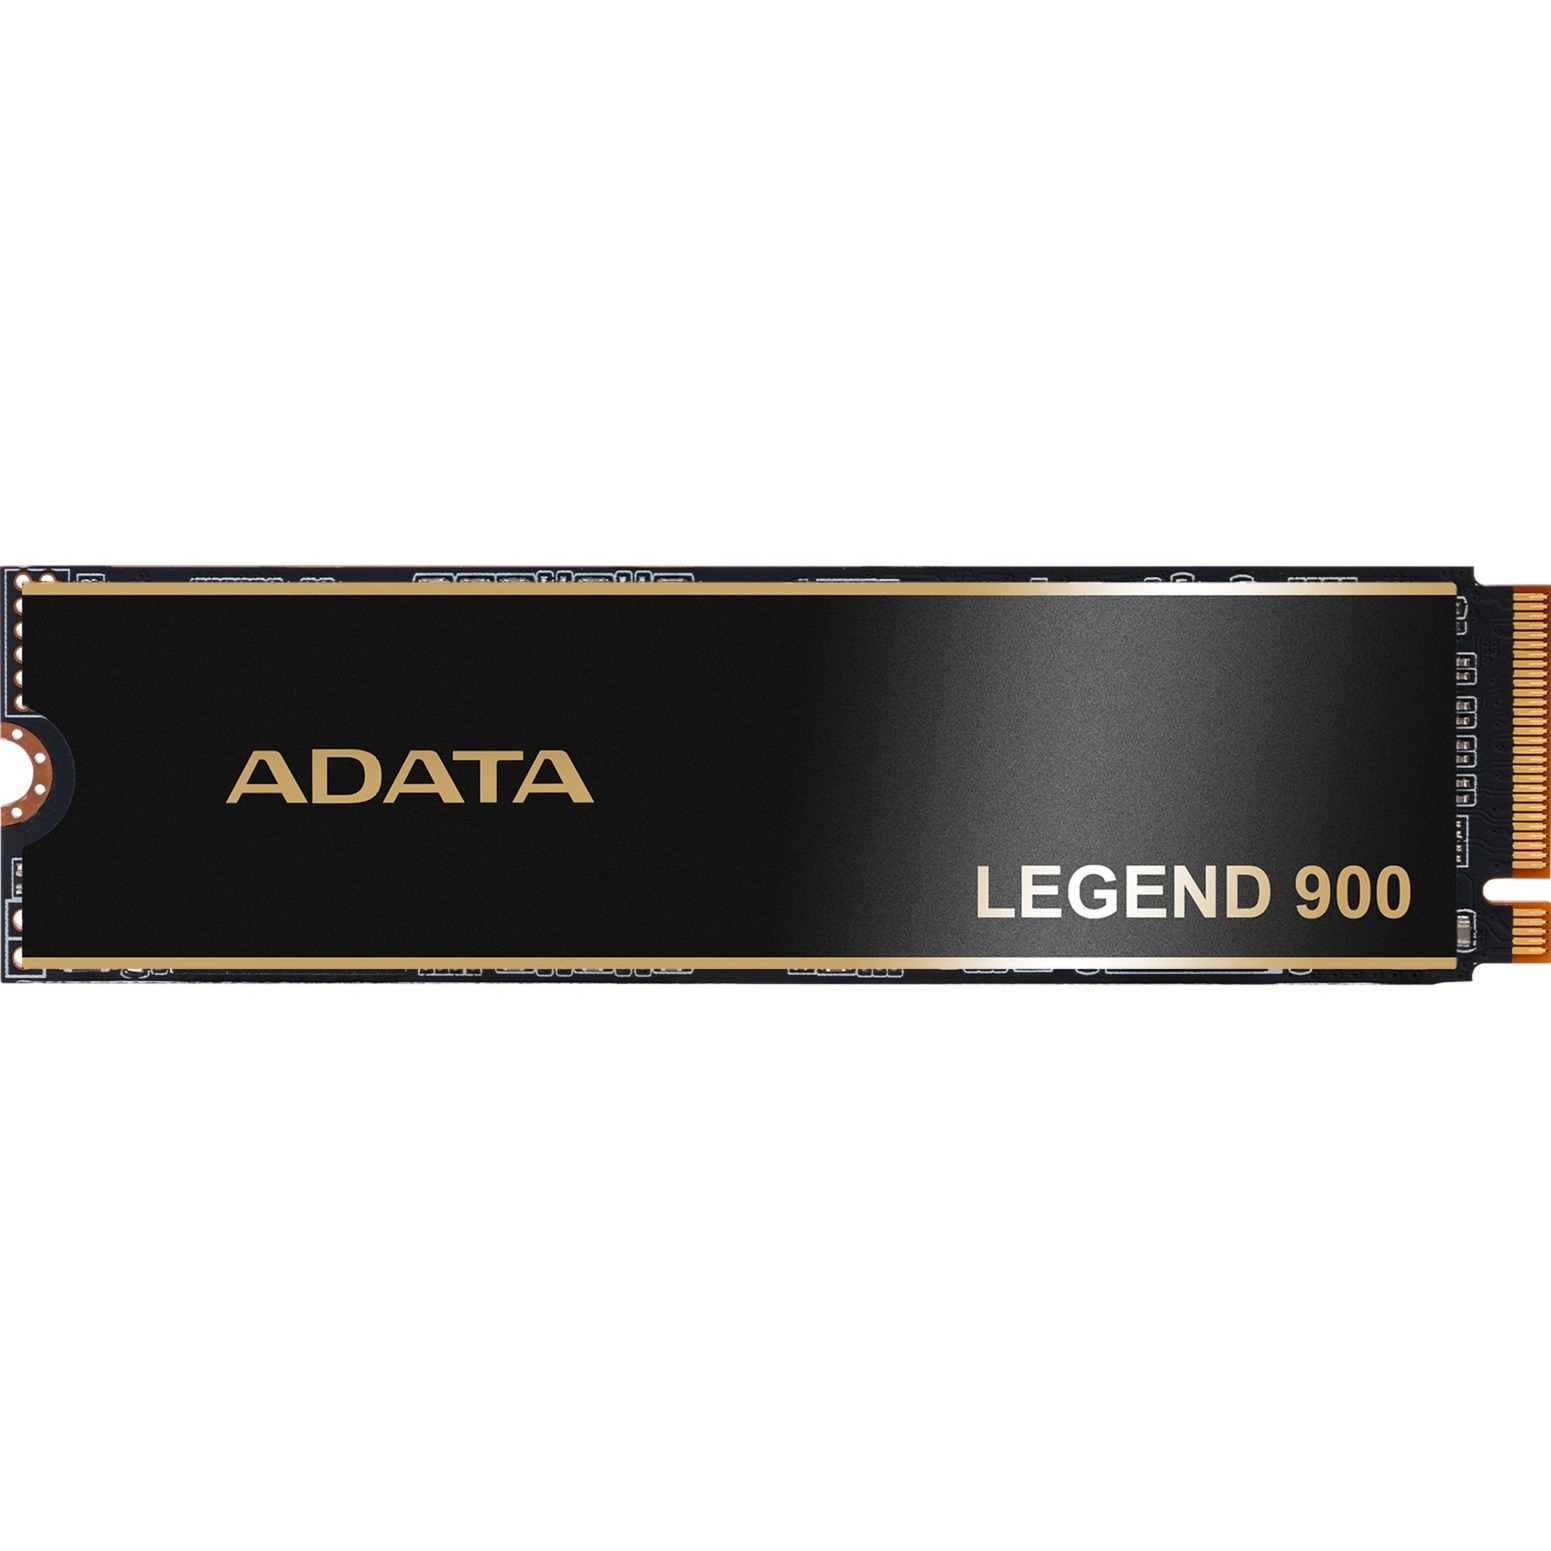 LEGEND 900 2 TB, SSD von ADATA